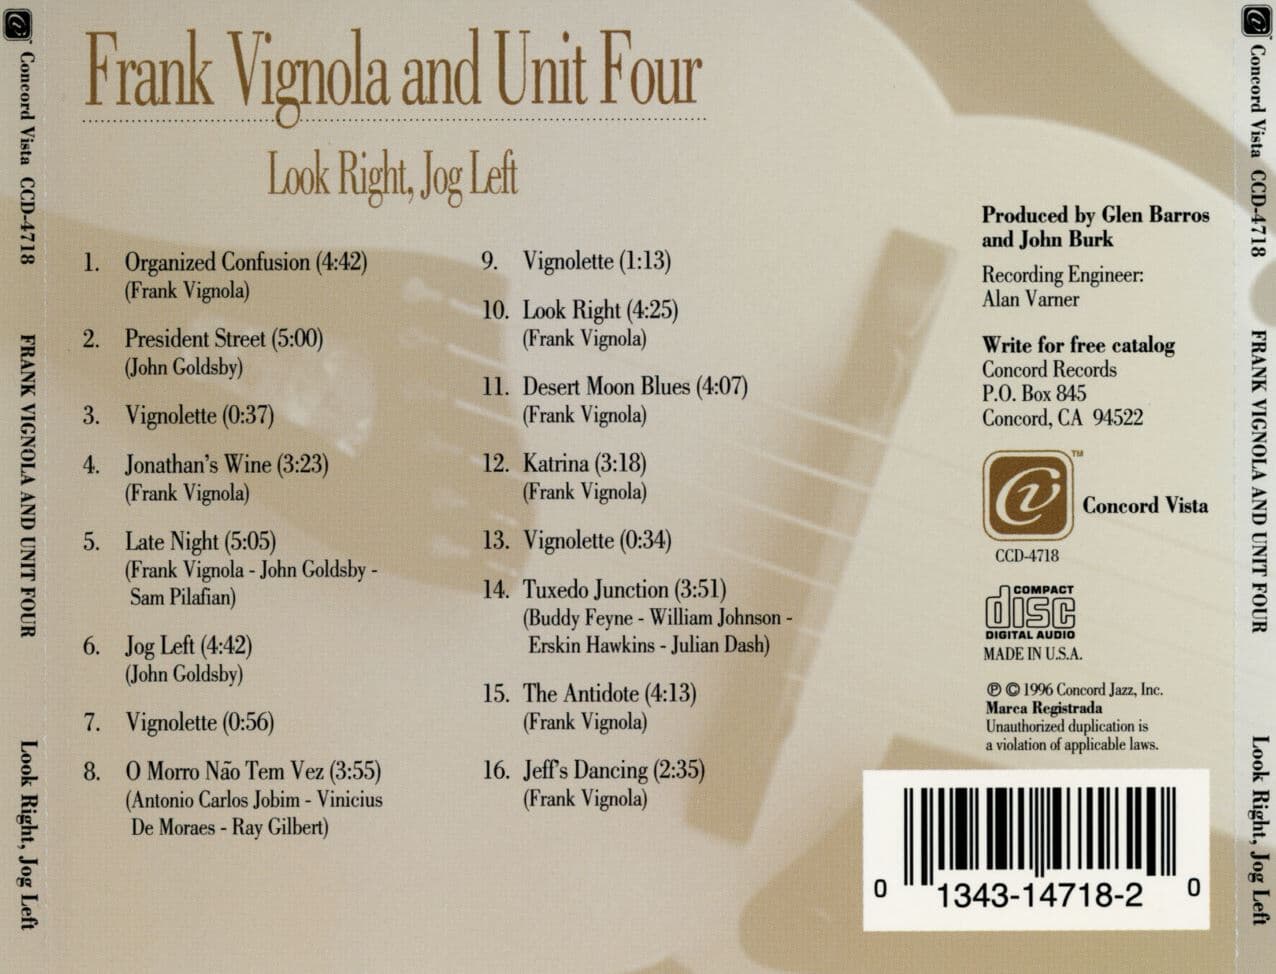 프랭크 비뇰라 & 유닛 포 - Frank Vignola and Unit Four - Look Right, Jog Left [U.S발매]